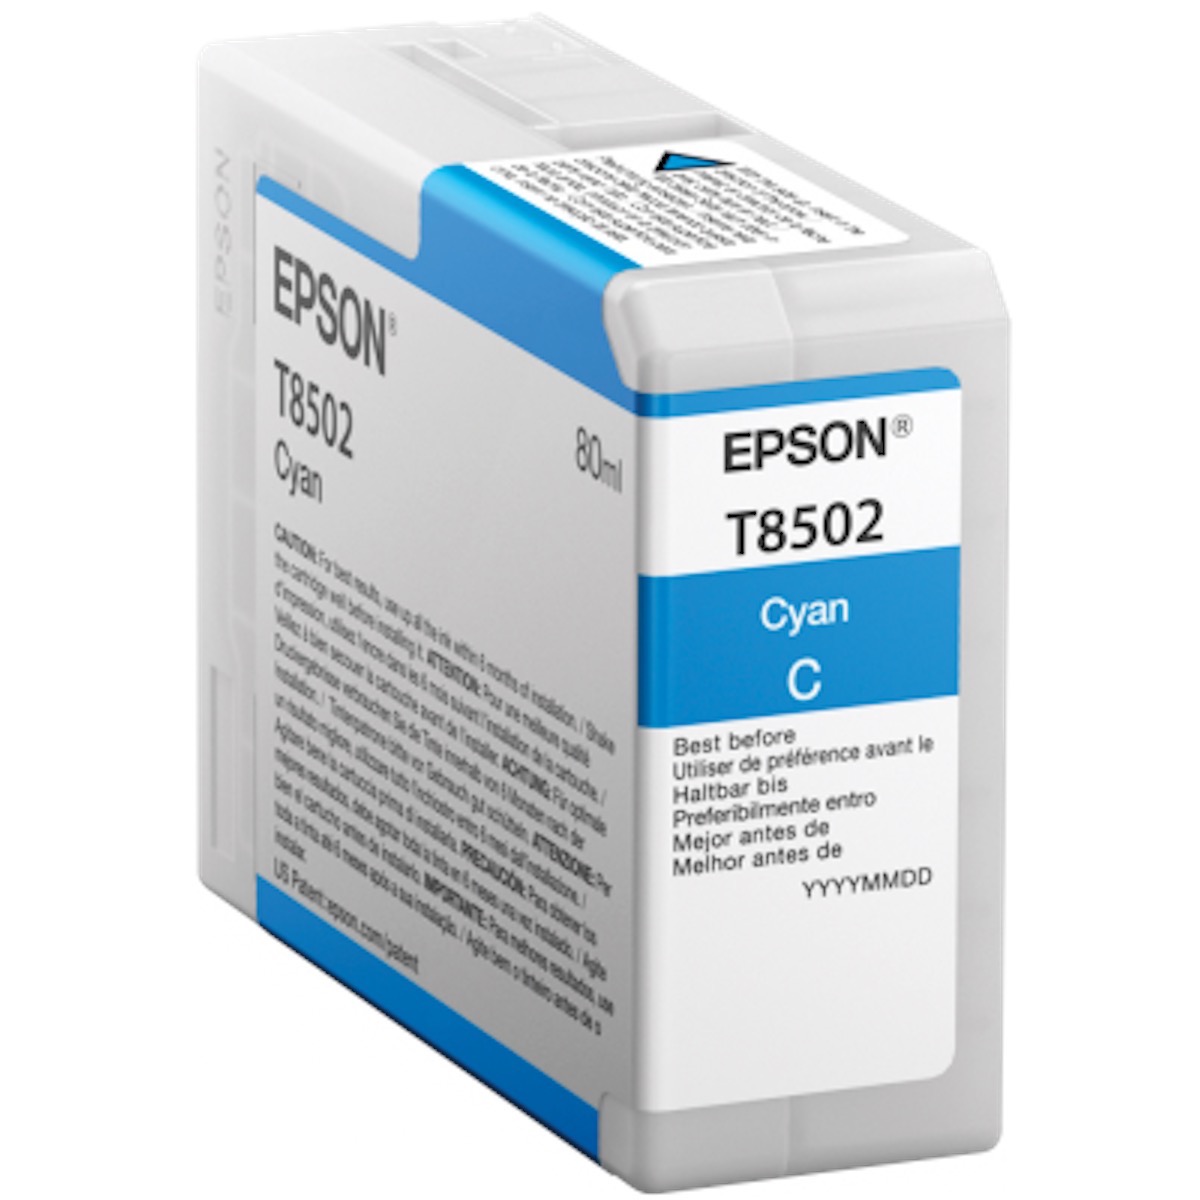 Epson T8502 cyan Tinte